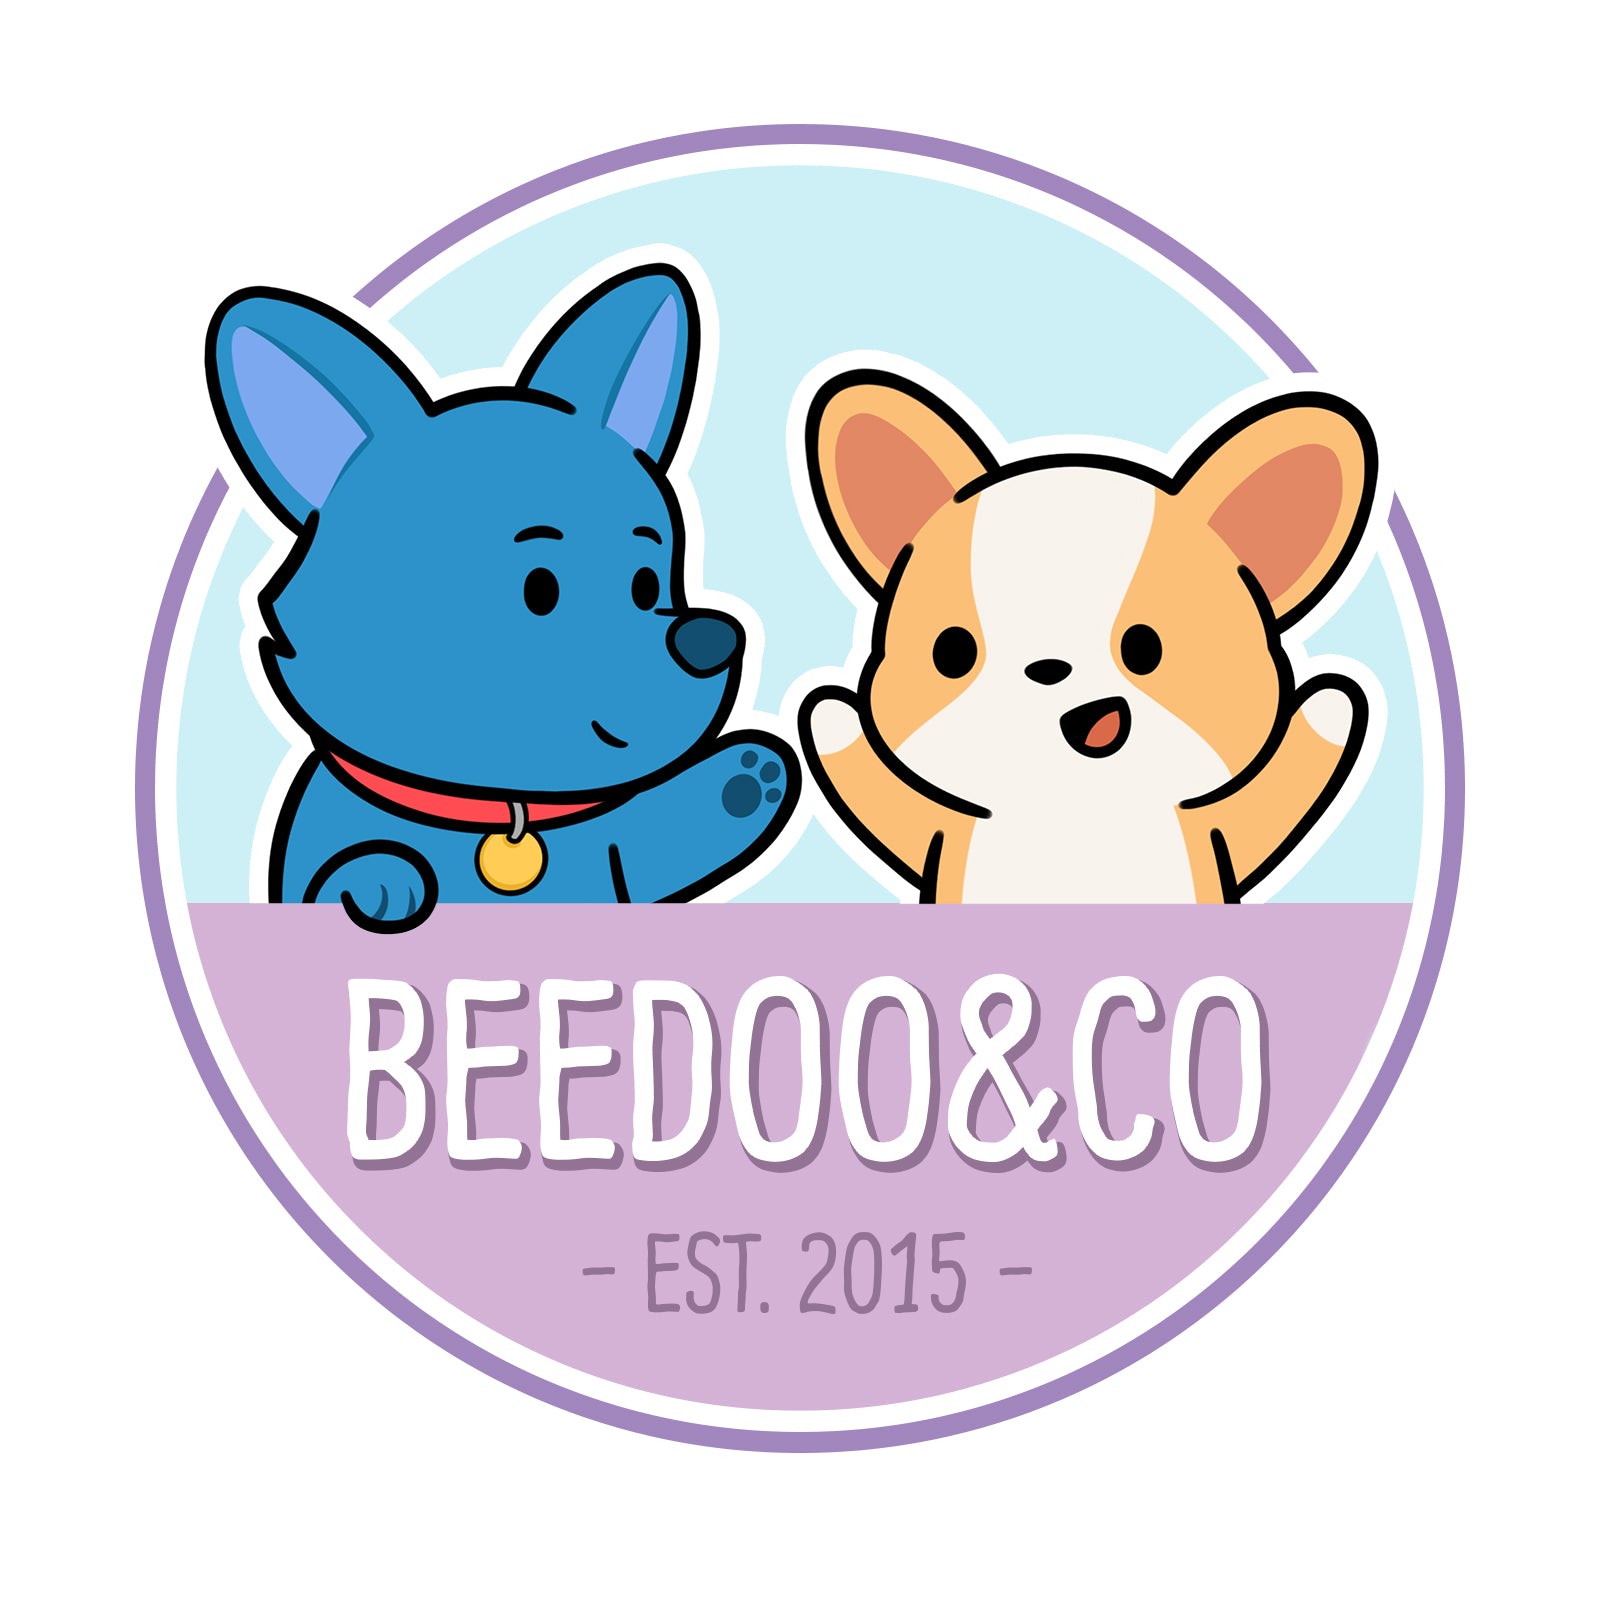 Beedoo&Co